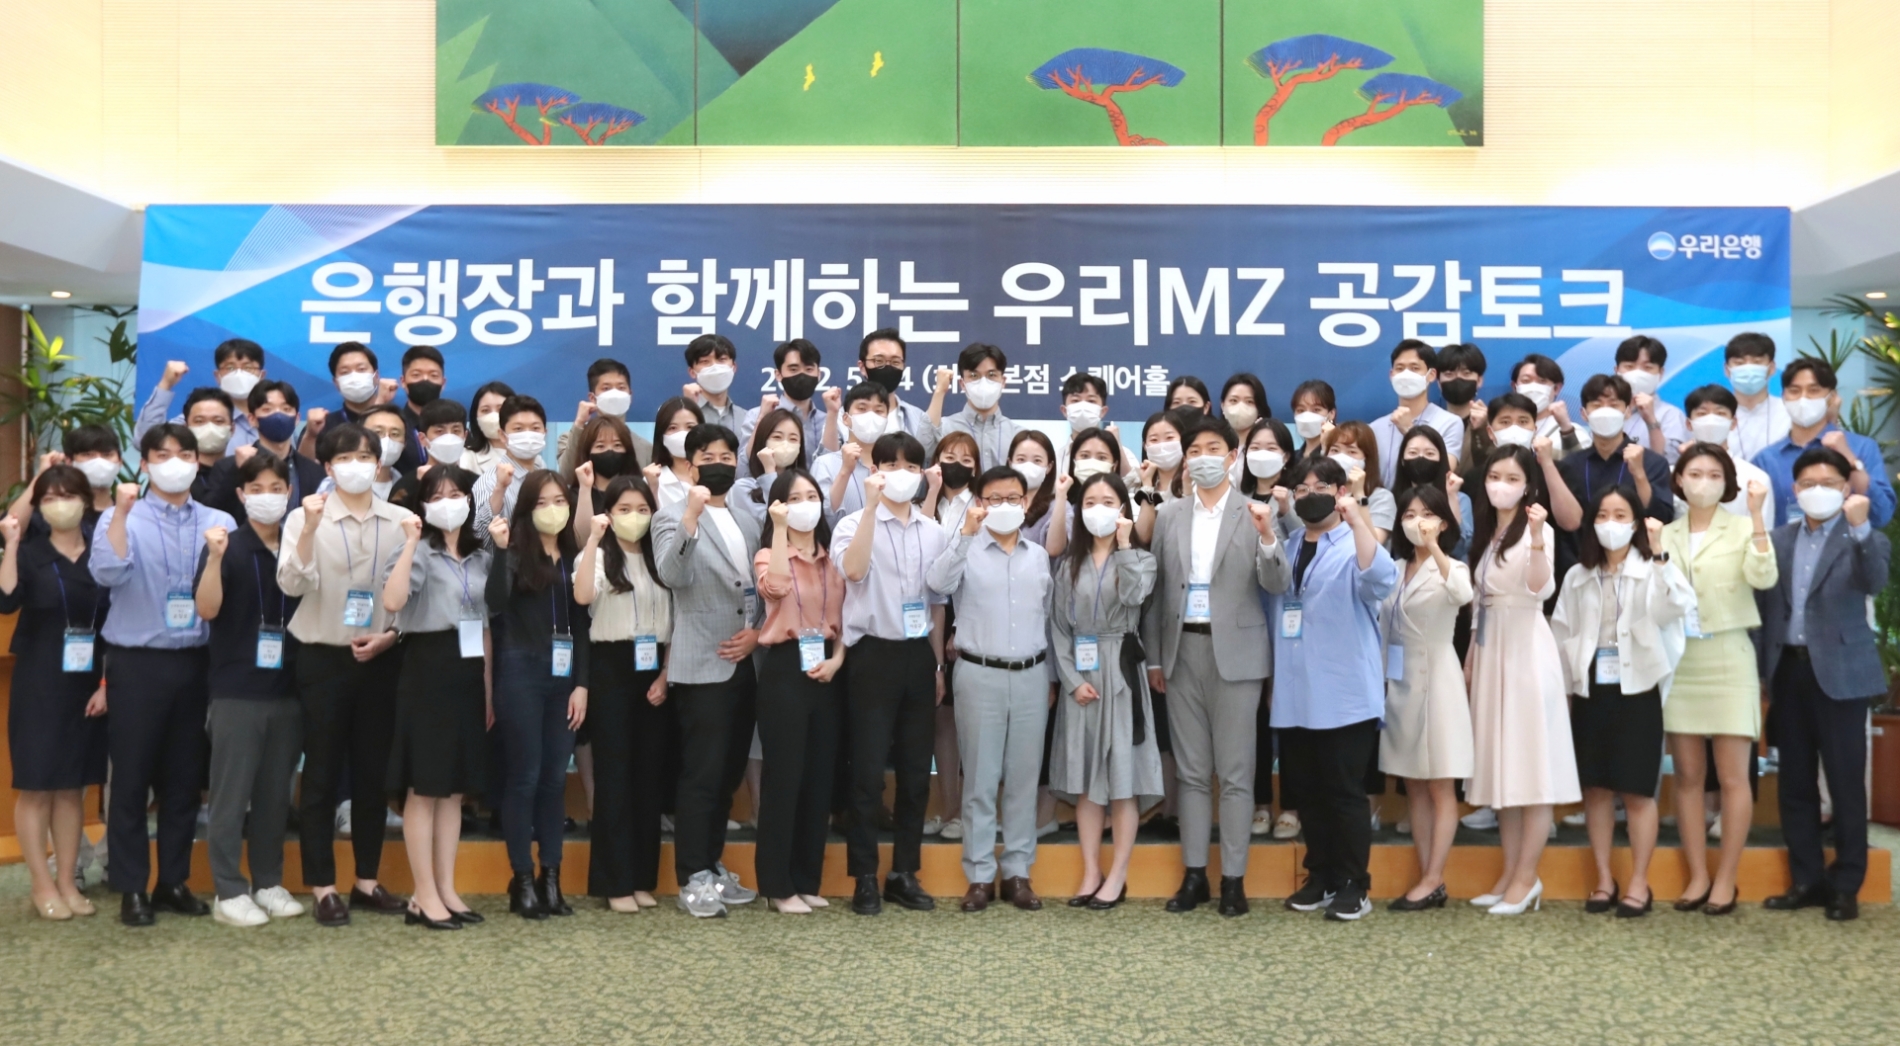 이원덕 우리은행장(첫째줄 오른쪽에서 아홉번째)이 24일 서울시 중구 소재 우리은행 본점에서 MZ세대 직원이 함께하는 ‘우리MZ 공감토크’ 행사를 열고 기념촬영을 하고 있다./사진=우리은행